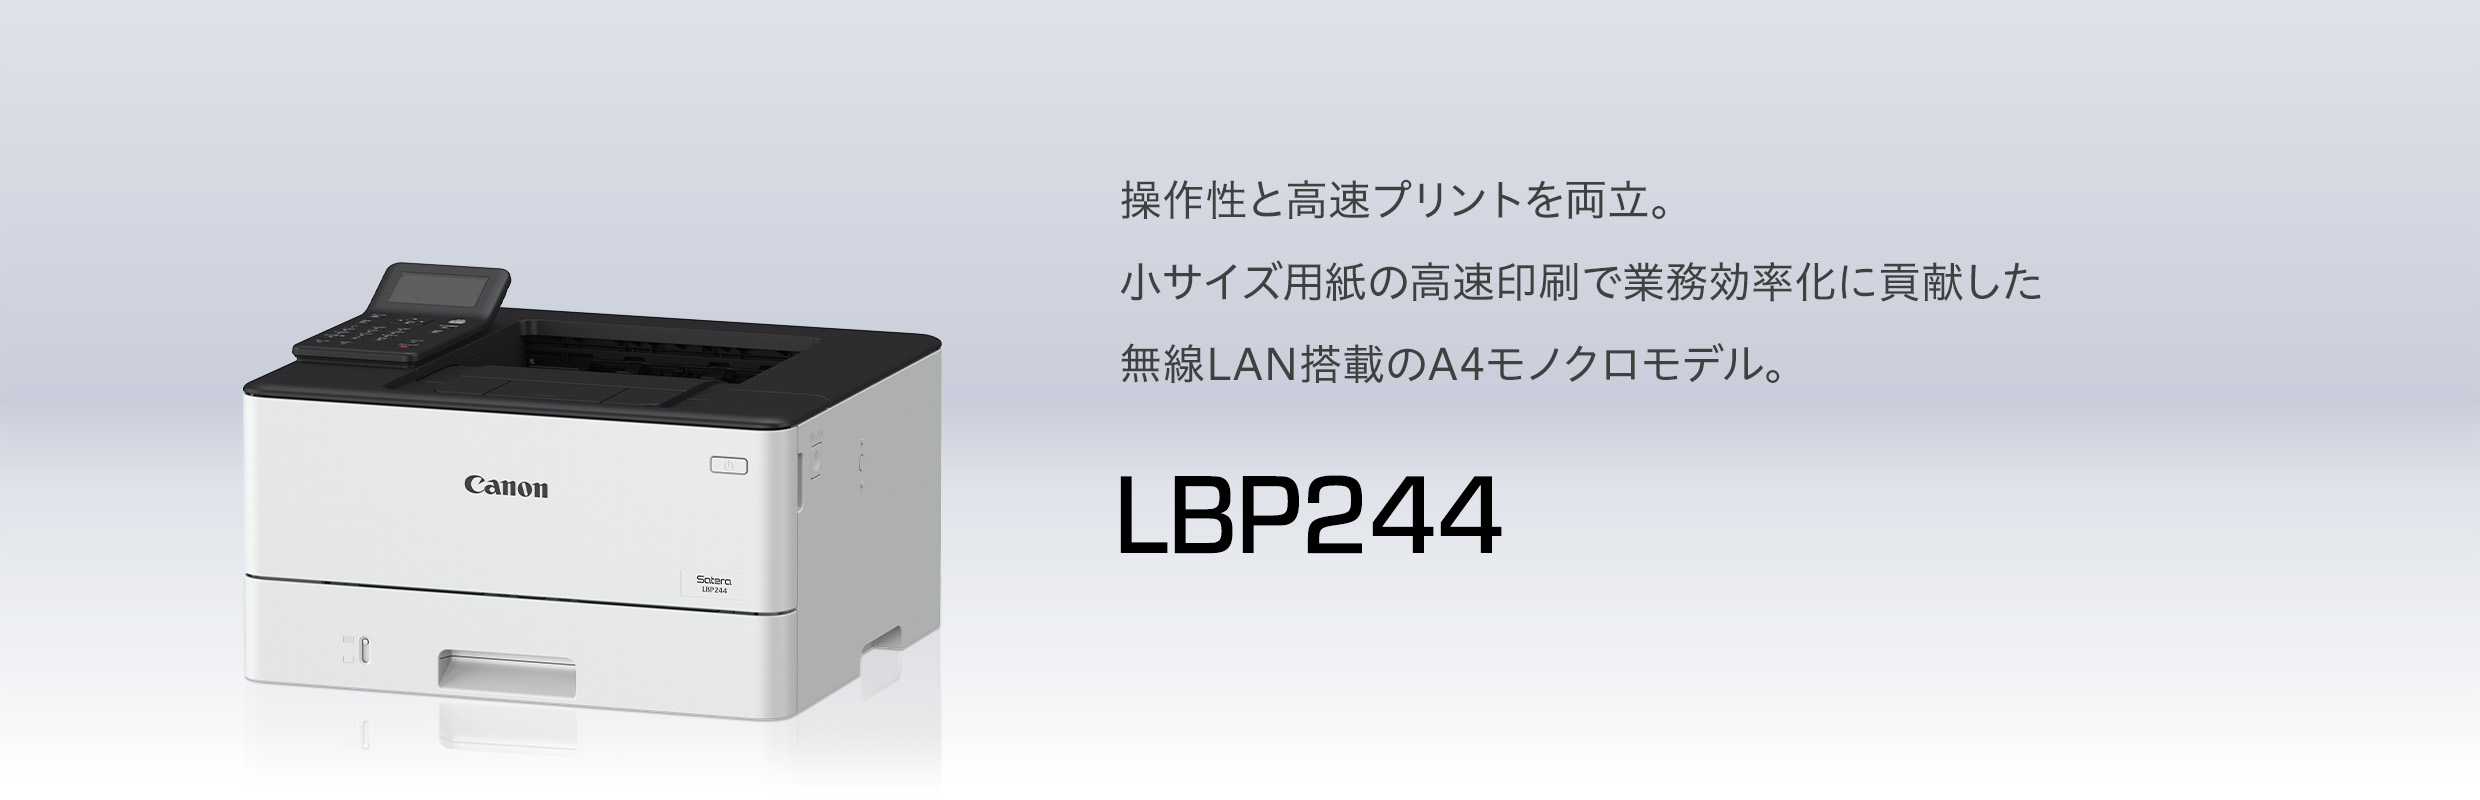 日本正規 A4モノクロレーザープリンター キヤノン Satera LBP224 レーザープリンター、複合機 CONTRAXAWARE